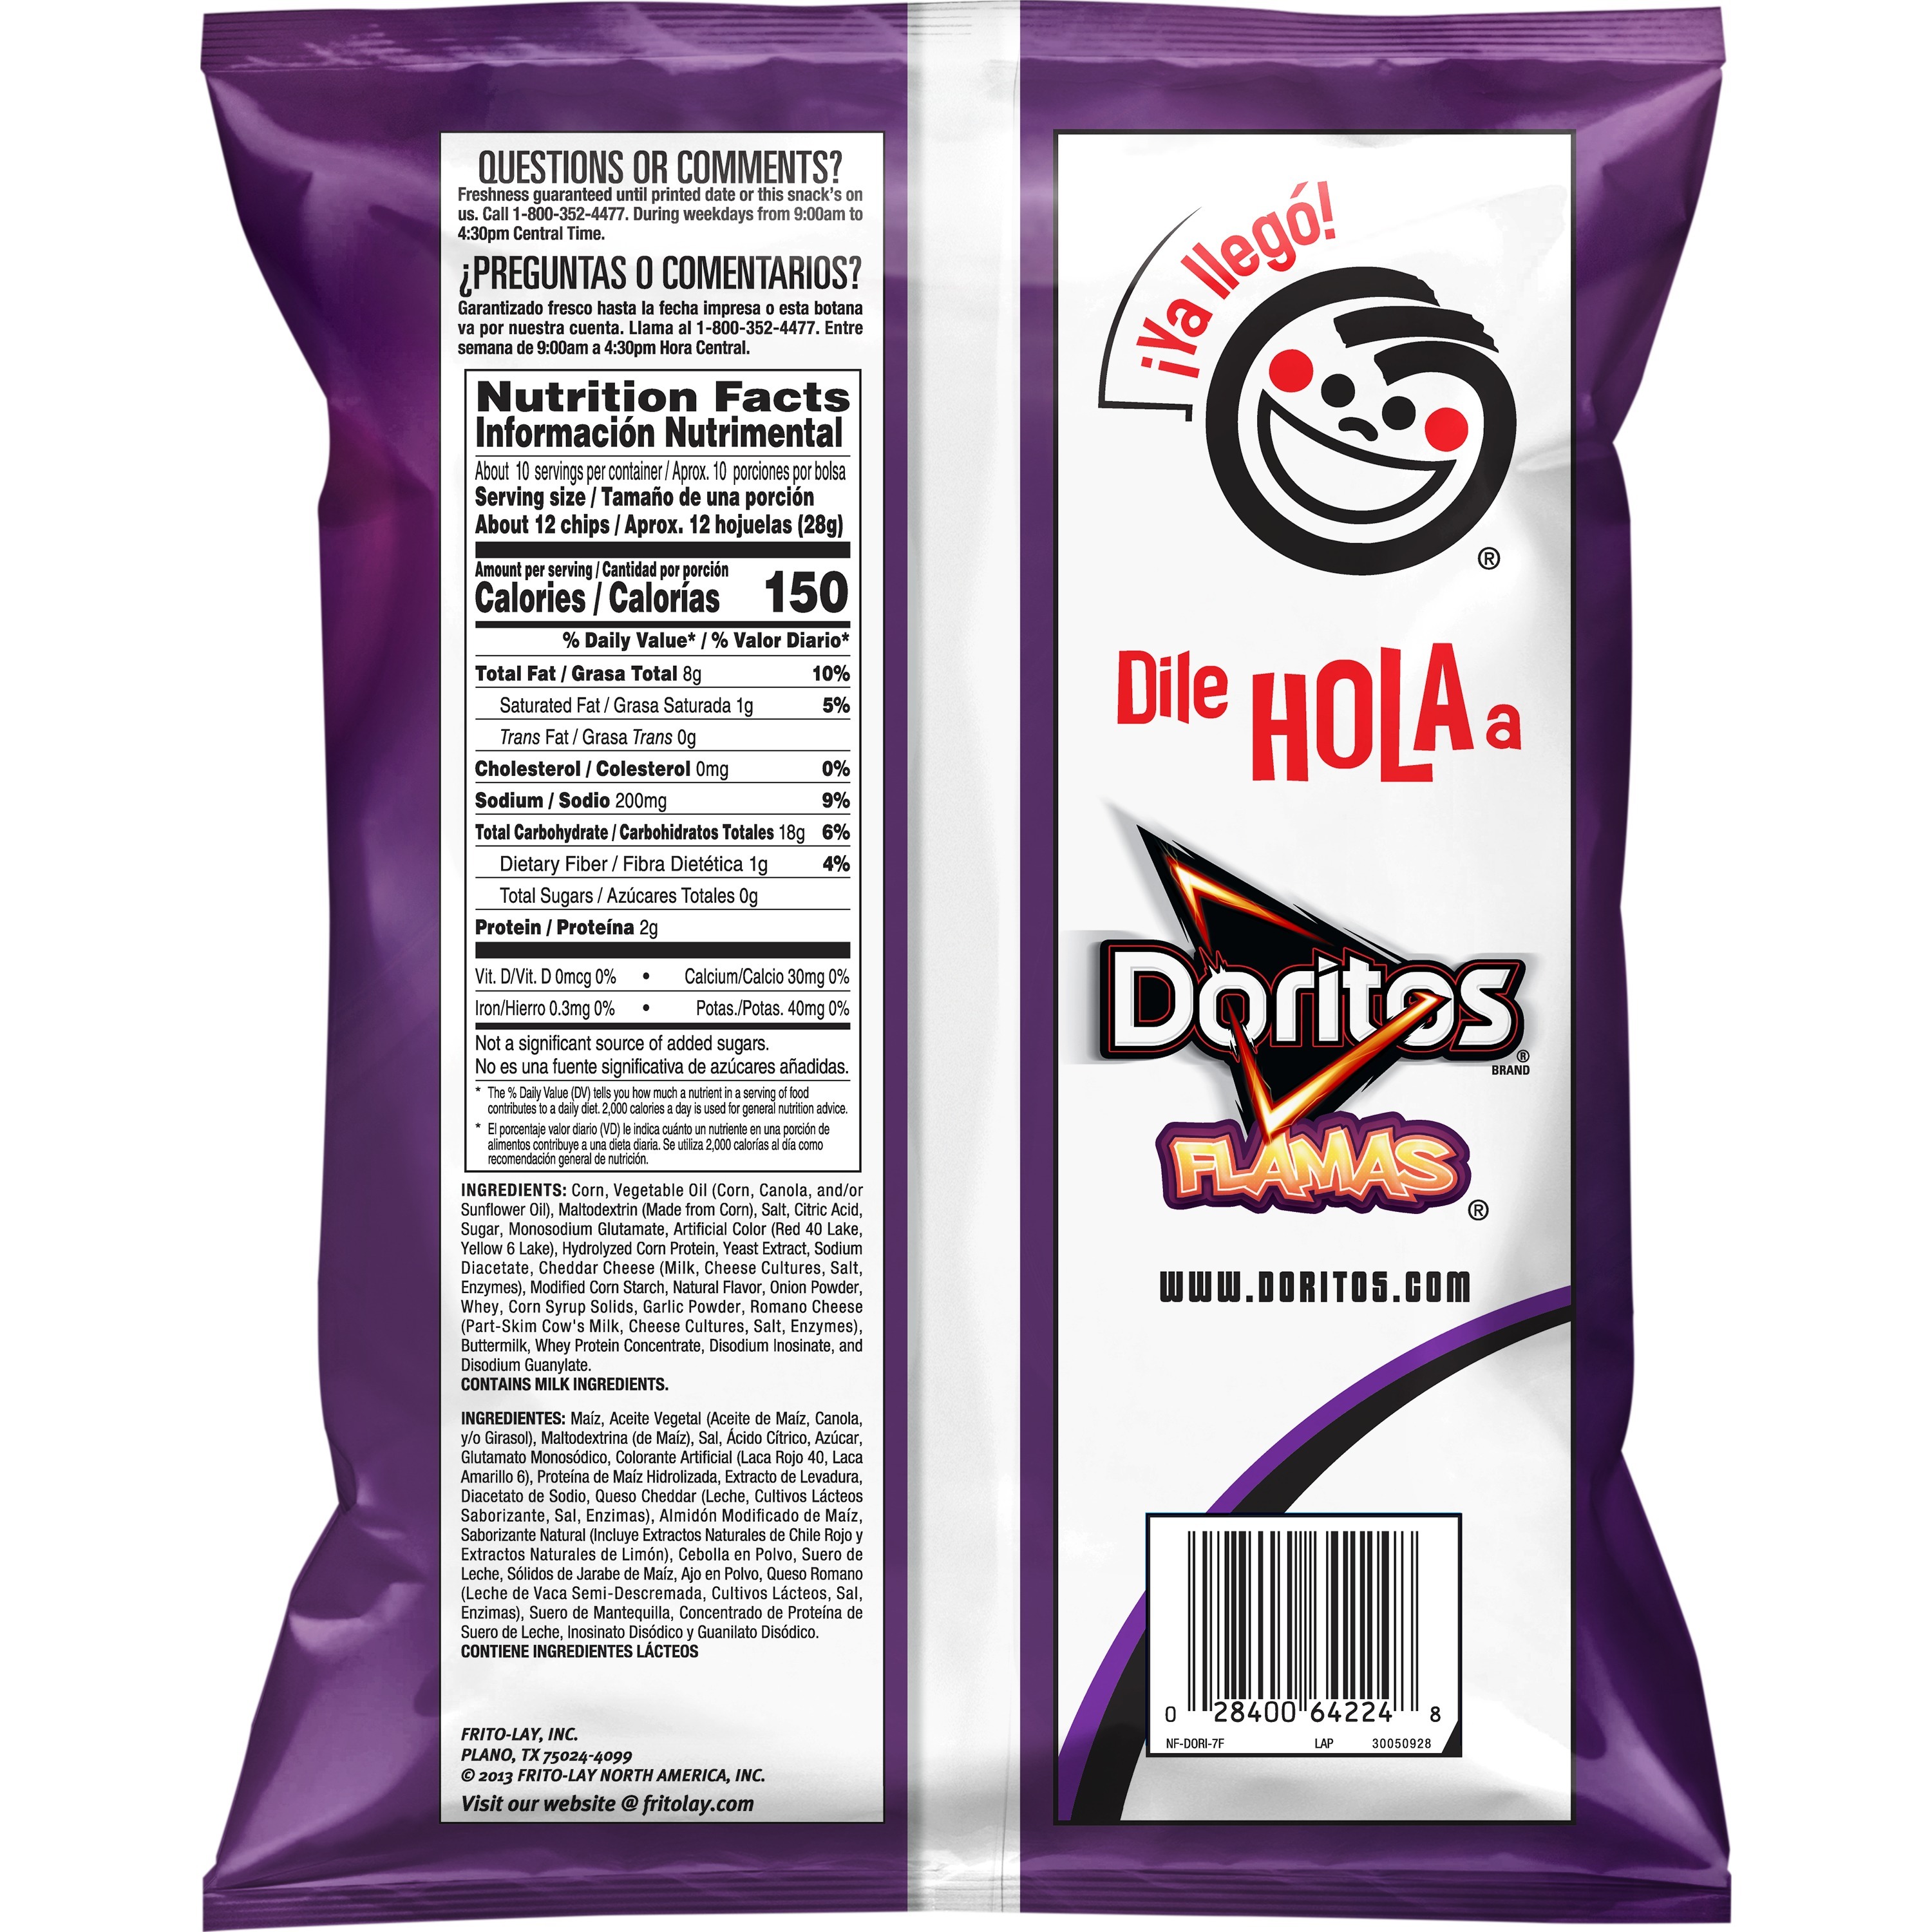 Doritos Flamas Flavored Tortilla Chips, 9.75 oz Bag - image 3 of 5